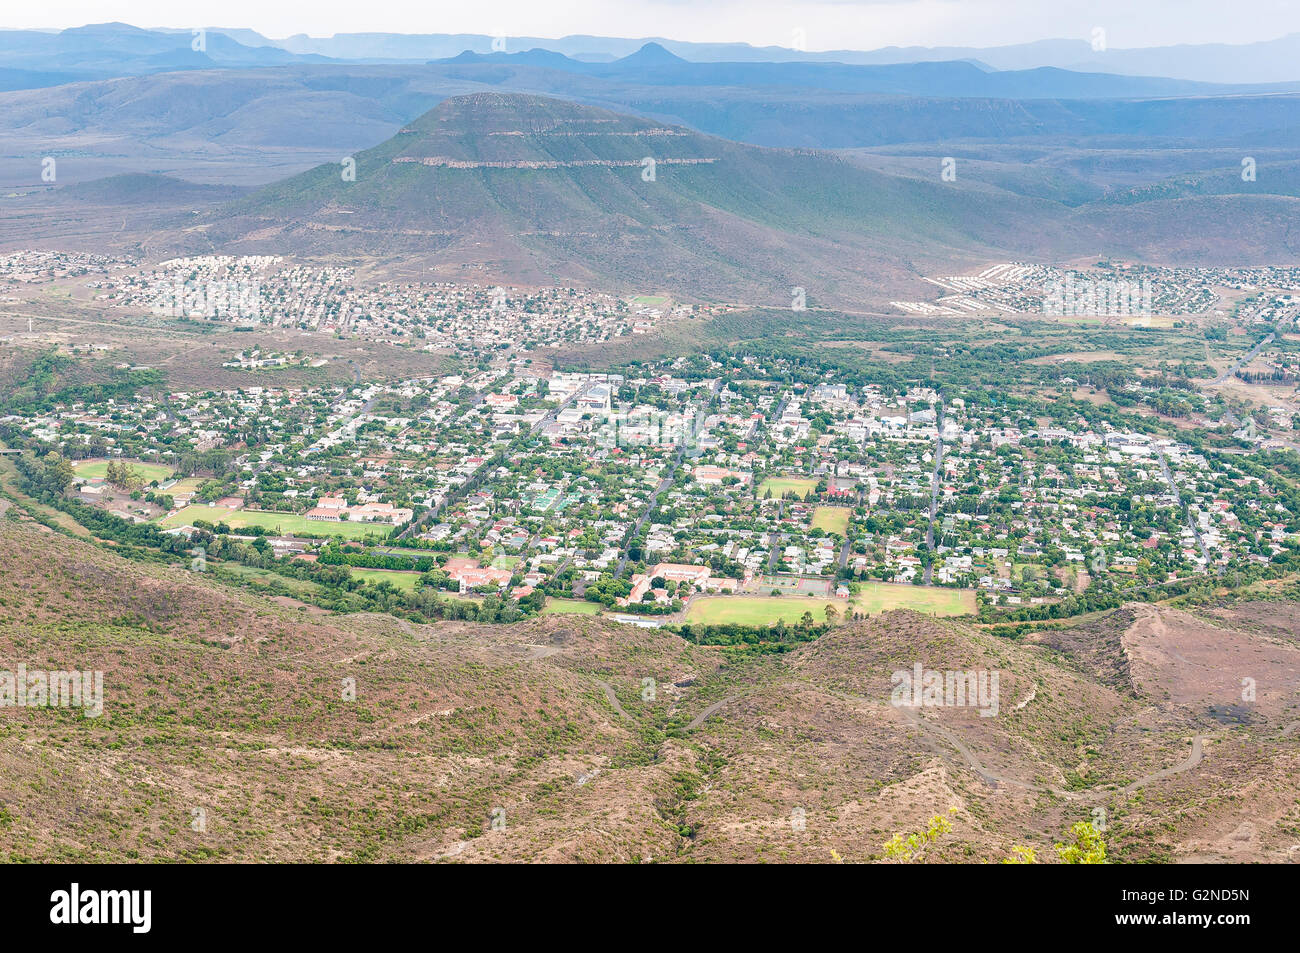 Eine Luftaufnahme von Graaff Reinet zum Valley of Desolation Aussichtspunkt von der Straße aus gesehen. Die Stadt liegt in einem der Horseshoe bend Stockfoto